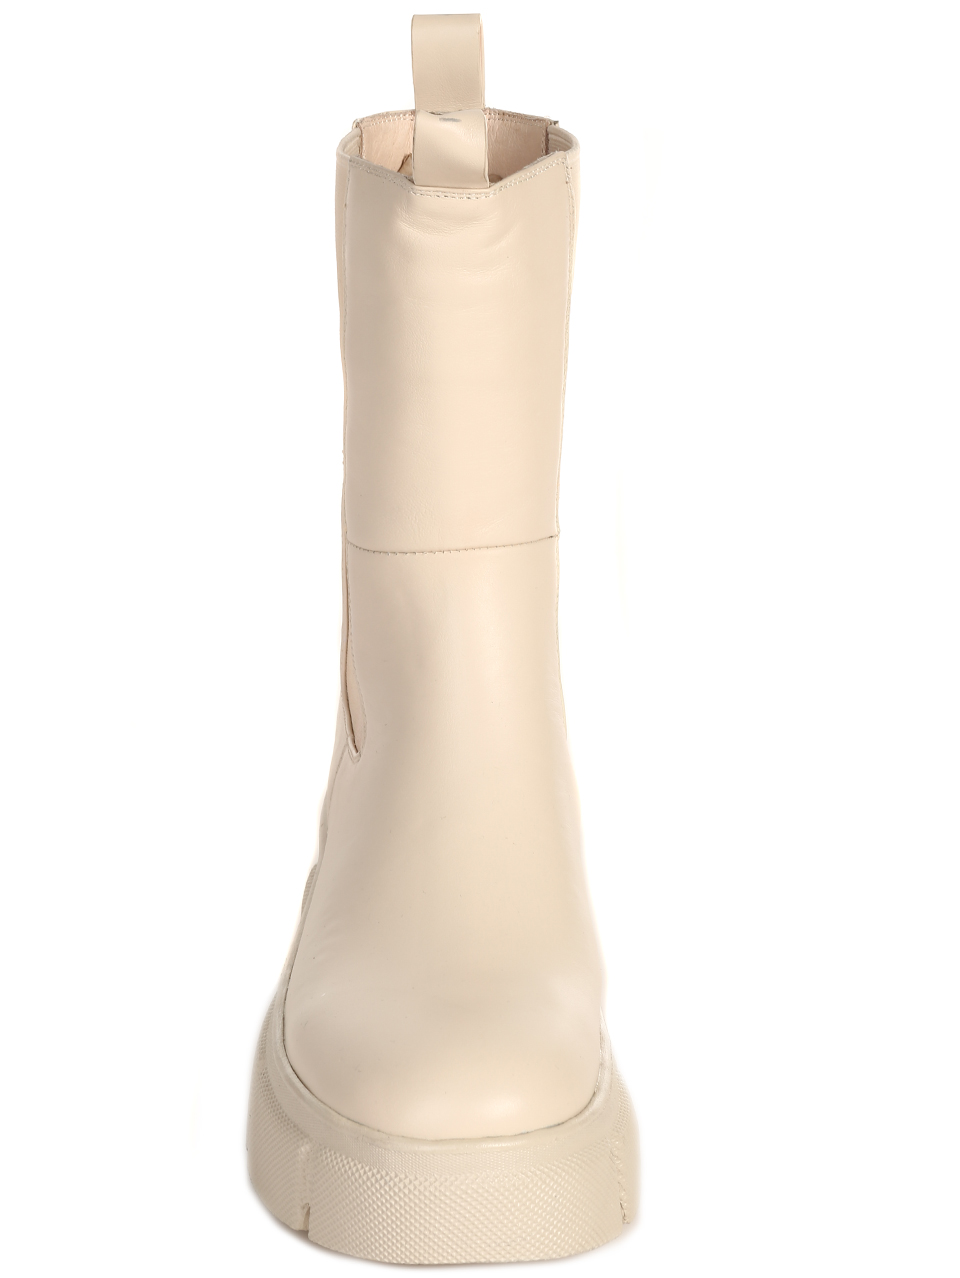 Ежедневни дамски боти от естествена кожа в бежово RX17-N736-A936T white